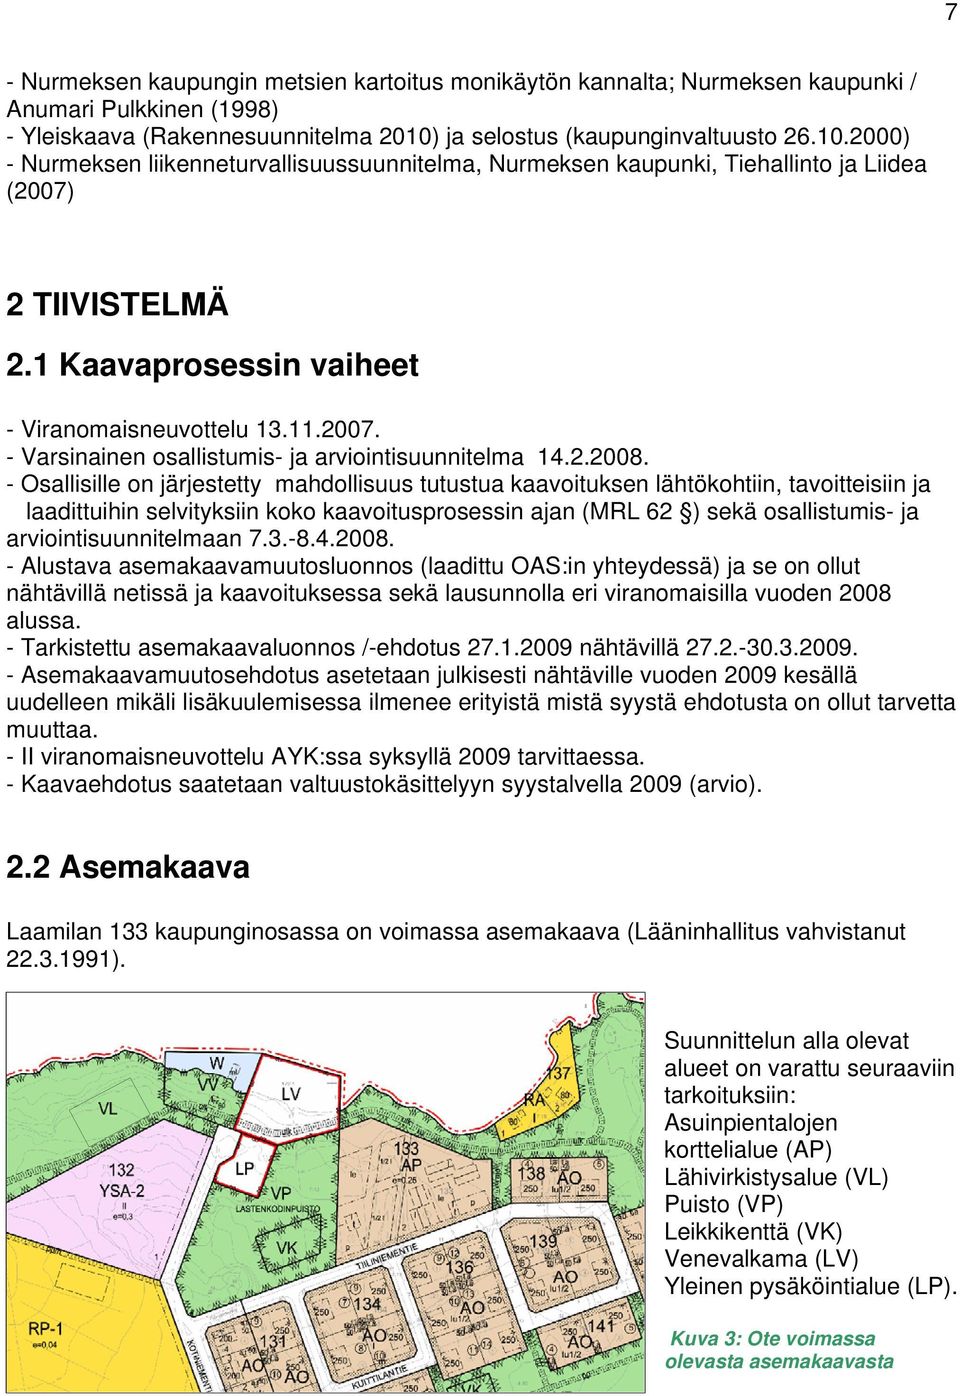 1 Kaavaprosessin vaiheet - Viranomaisneuvottelu 13.11.2007. - Varsinainen osallistumis- ja arviointisuunnitelma 14.2.2008.